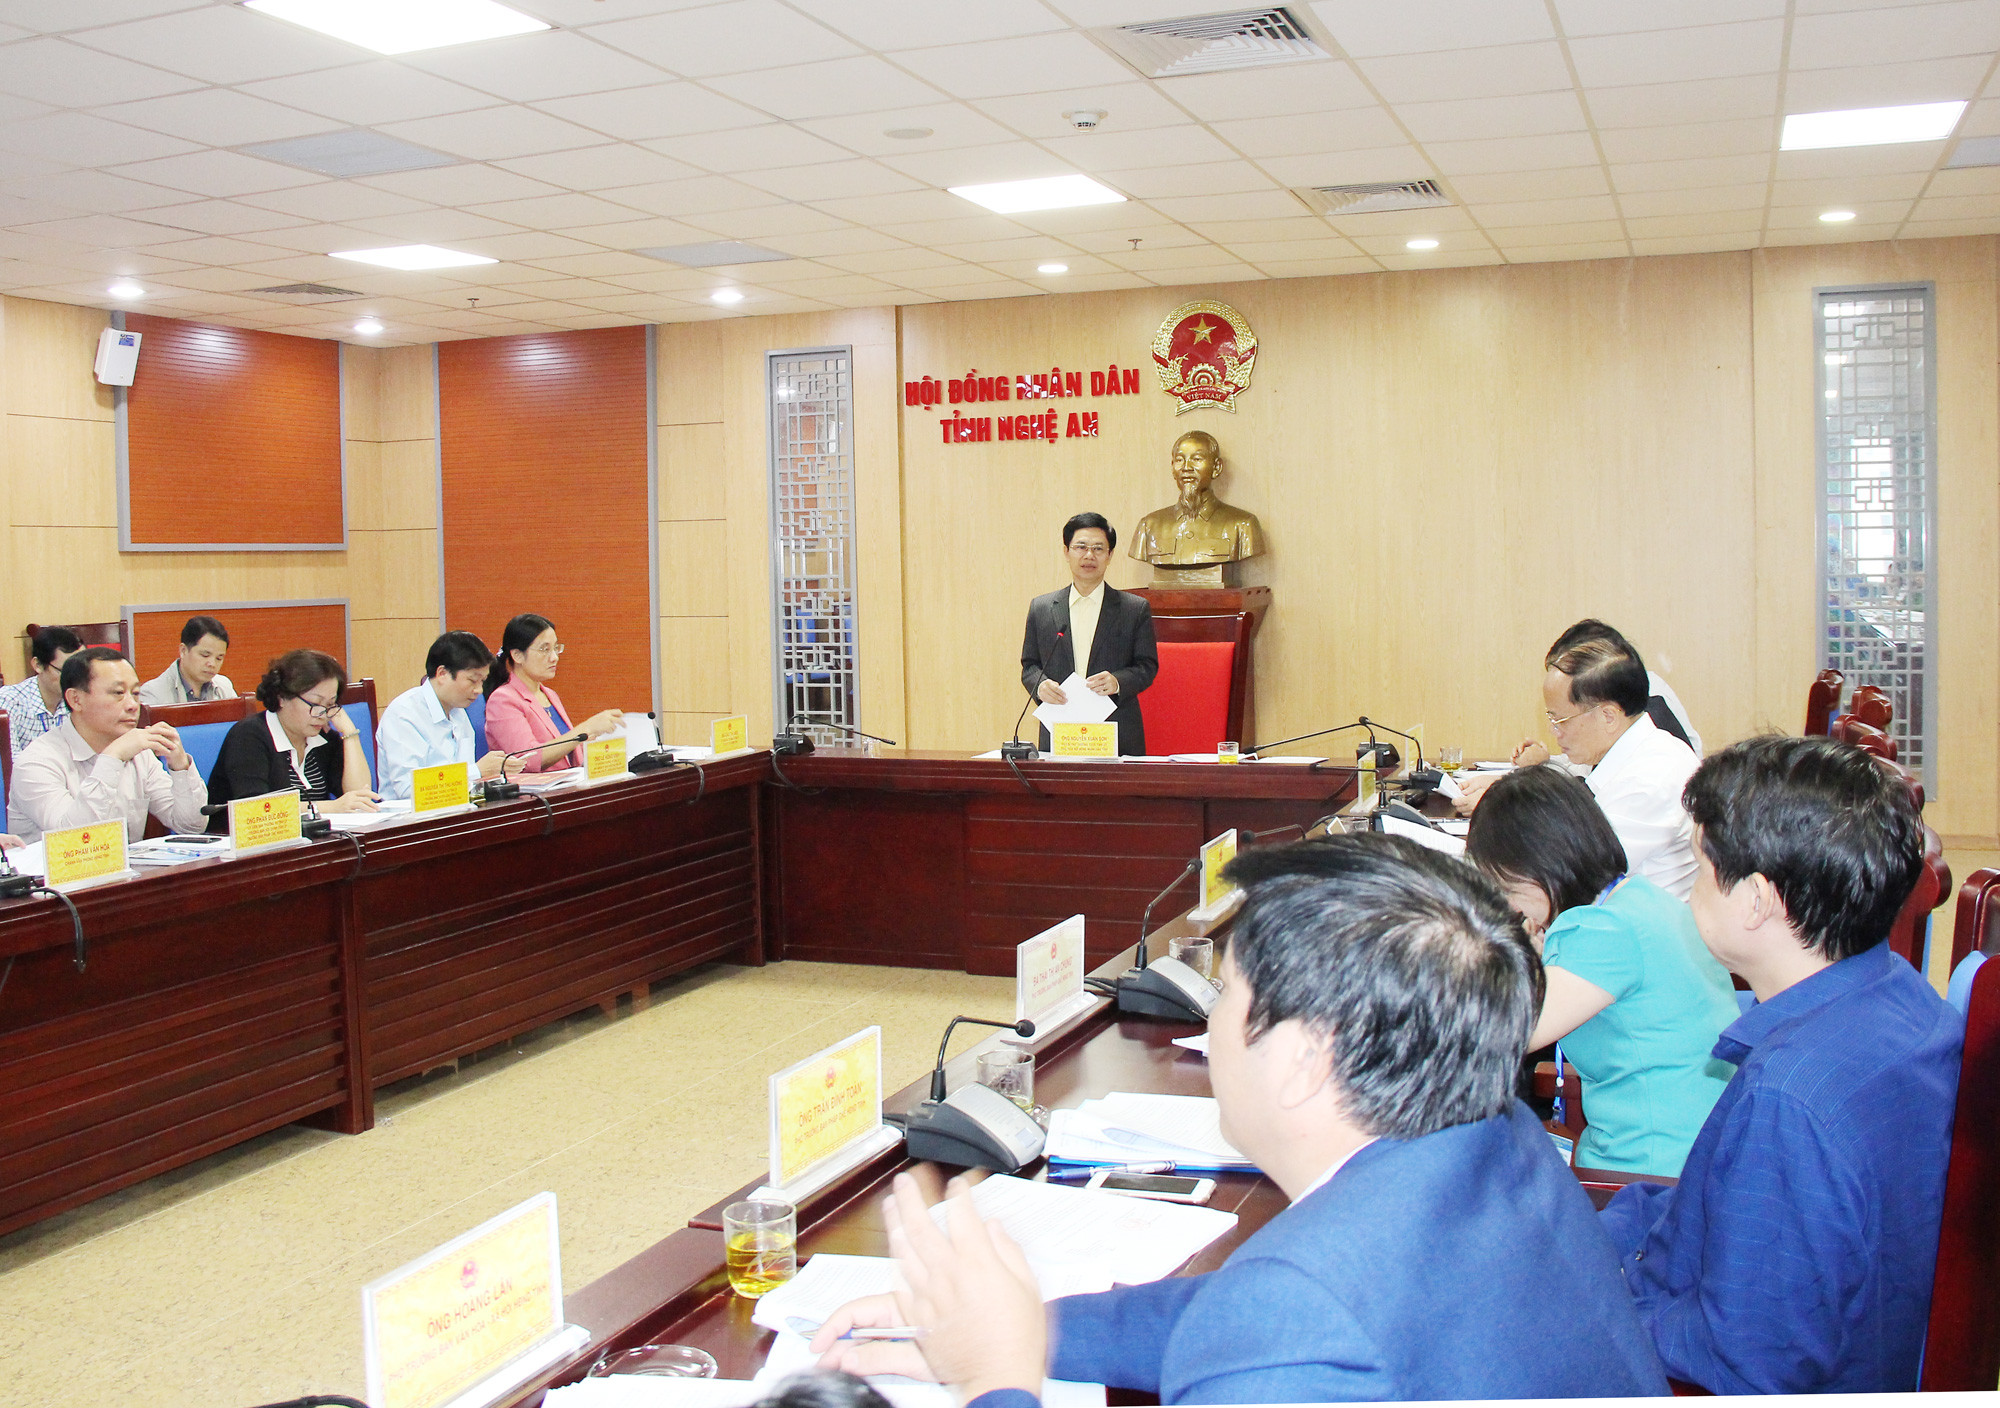 Đồng chí Nguyễn Xuân Sơn - Phó Bí thư Thường trực Tỉnh ủy, Chủ tịch HĐND tỉnh chủ trì cuộc họp.